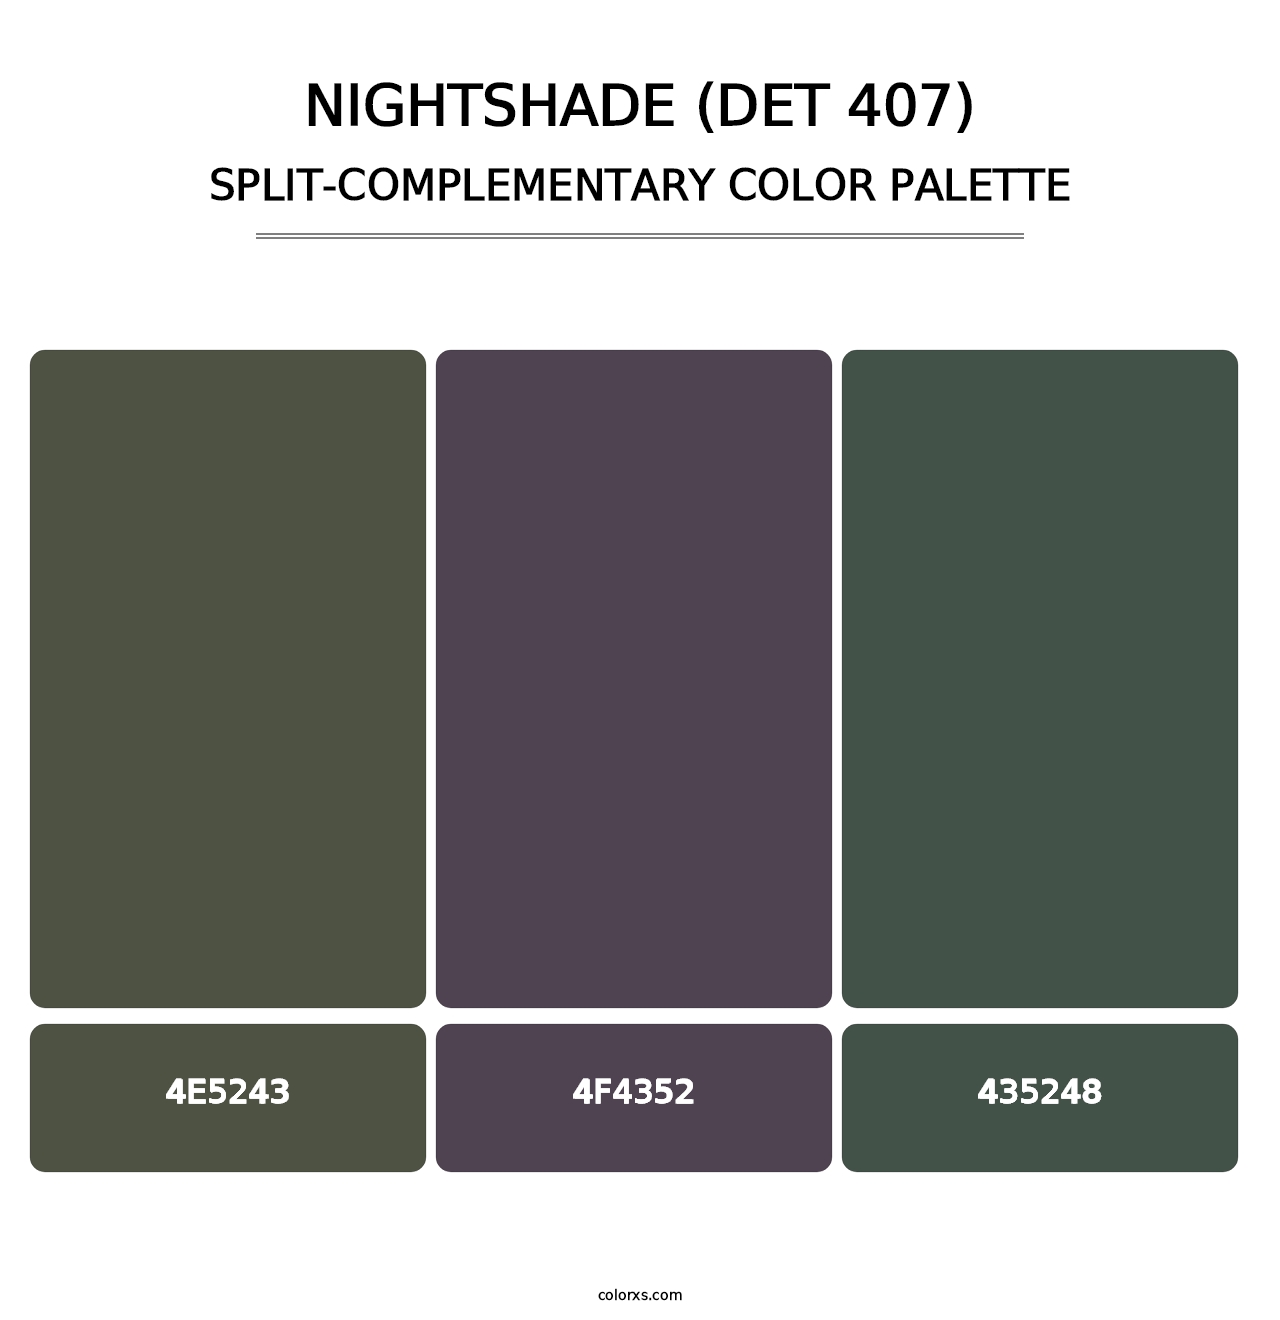 Nightshade (DET 407) - Split-Complementary Color Palette